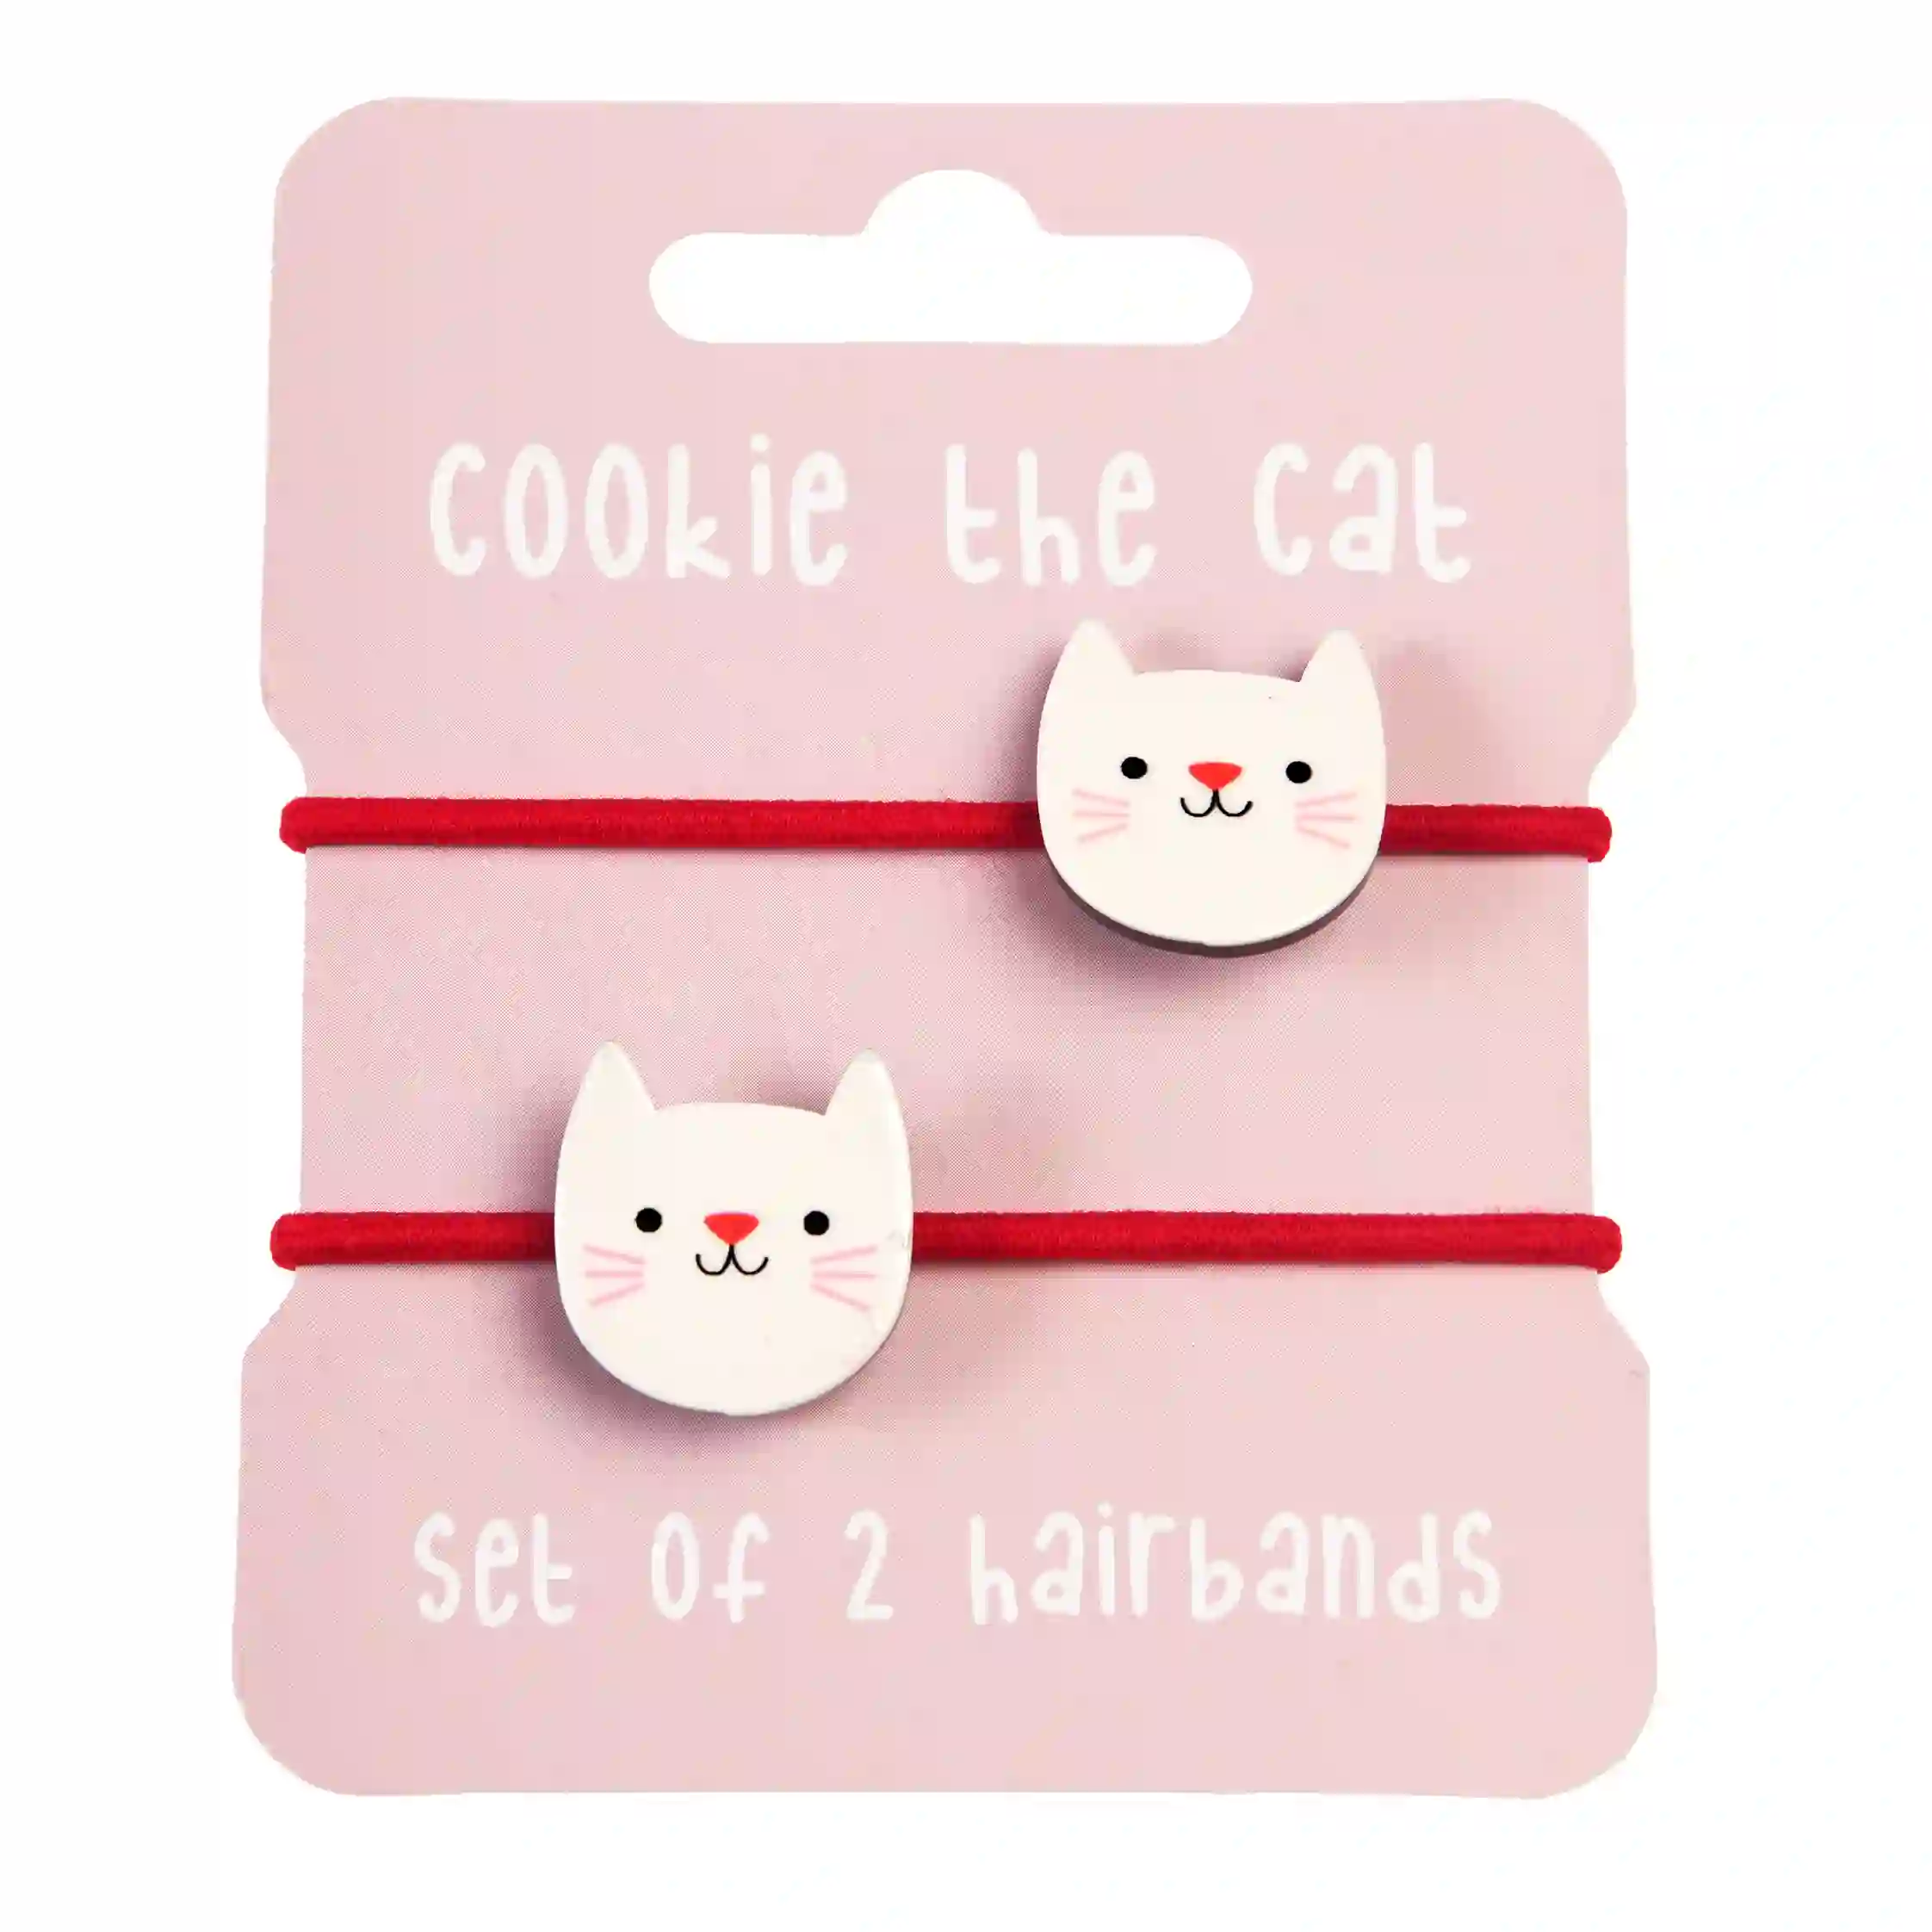 hair ties (set of 2) - cookie the cat